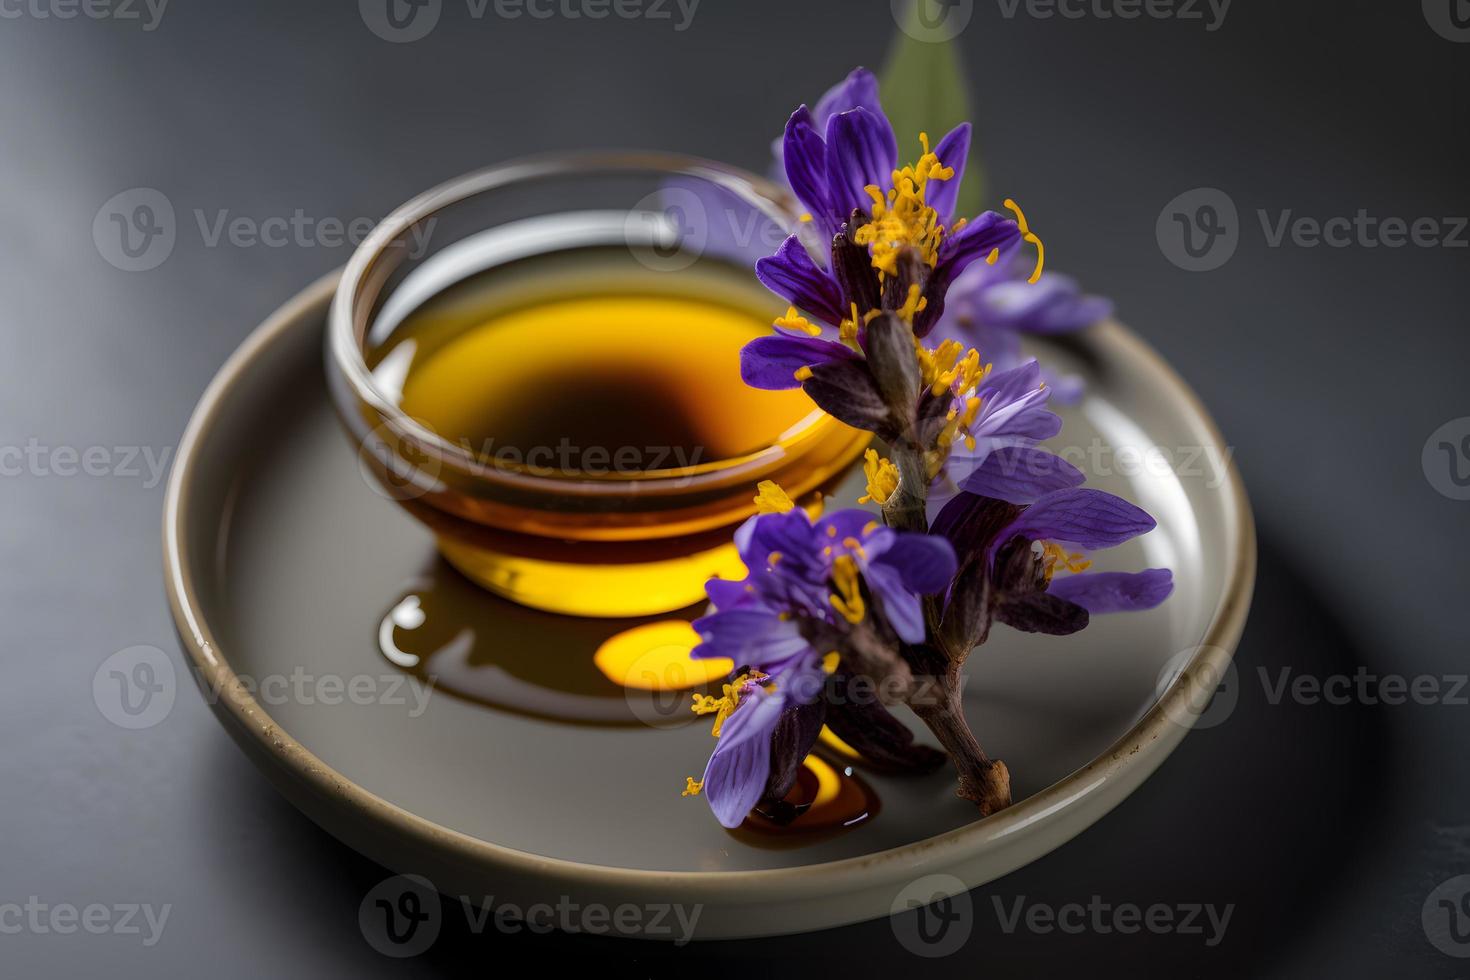 hecho en casa y sabroso frito lila flor en girasol petróleo fotografía foto